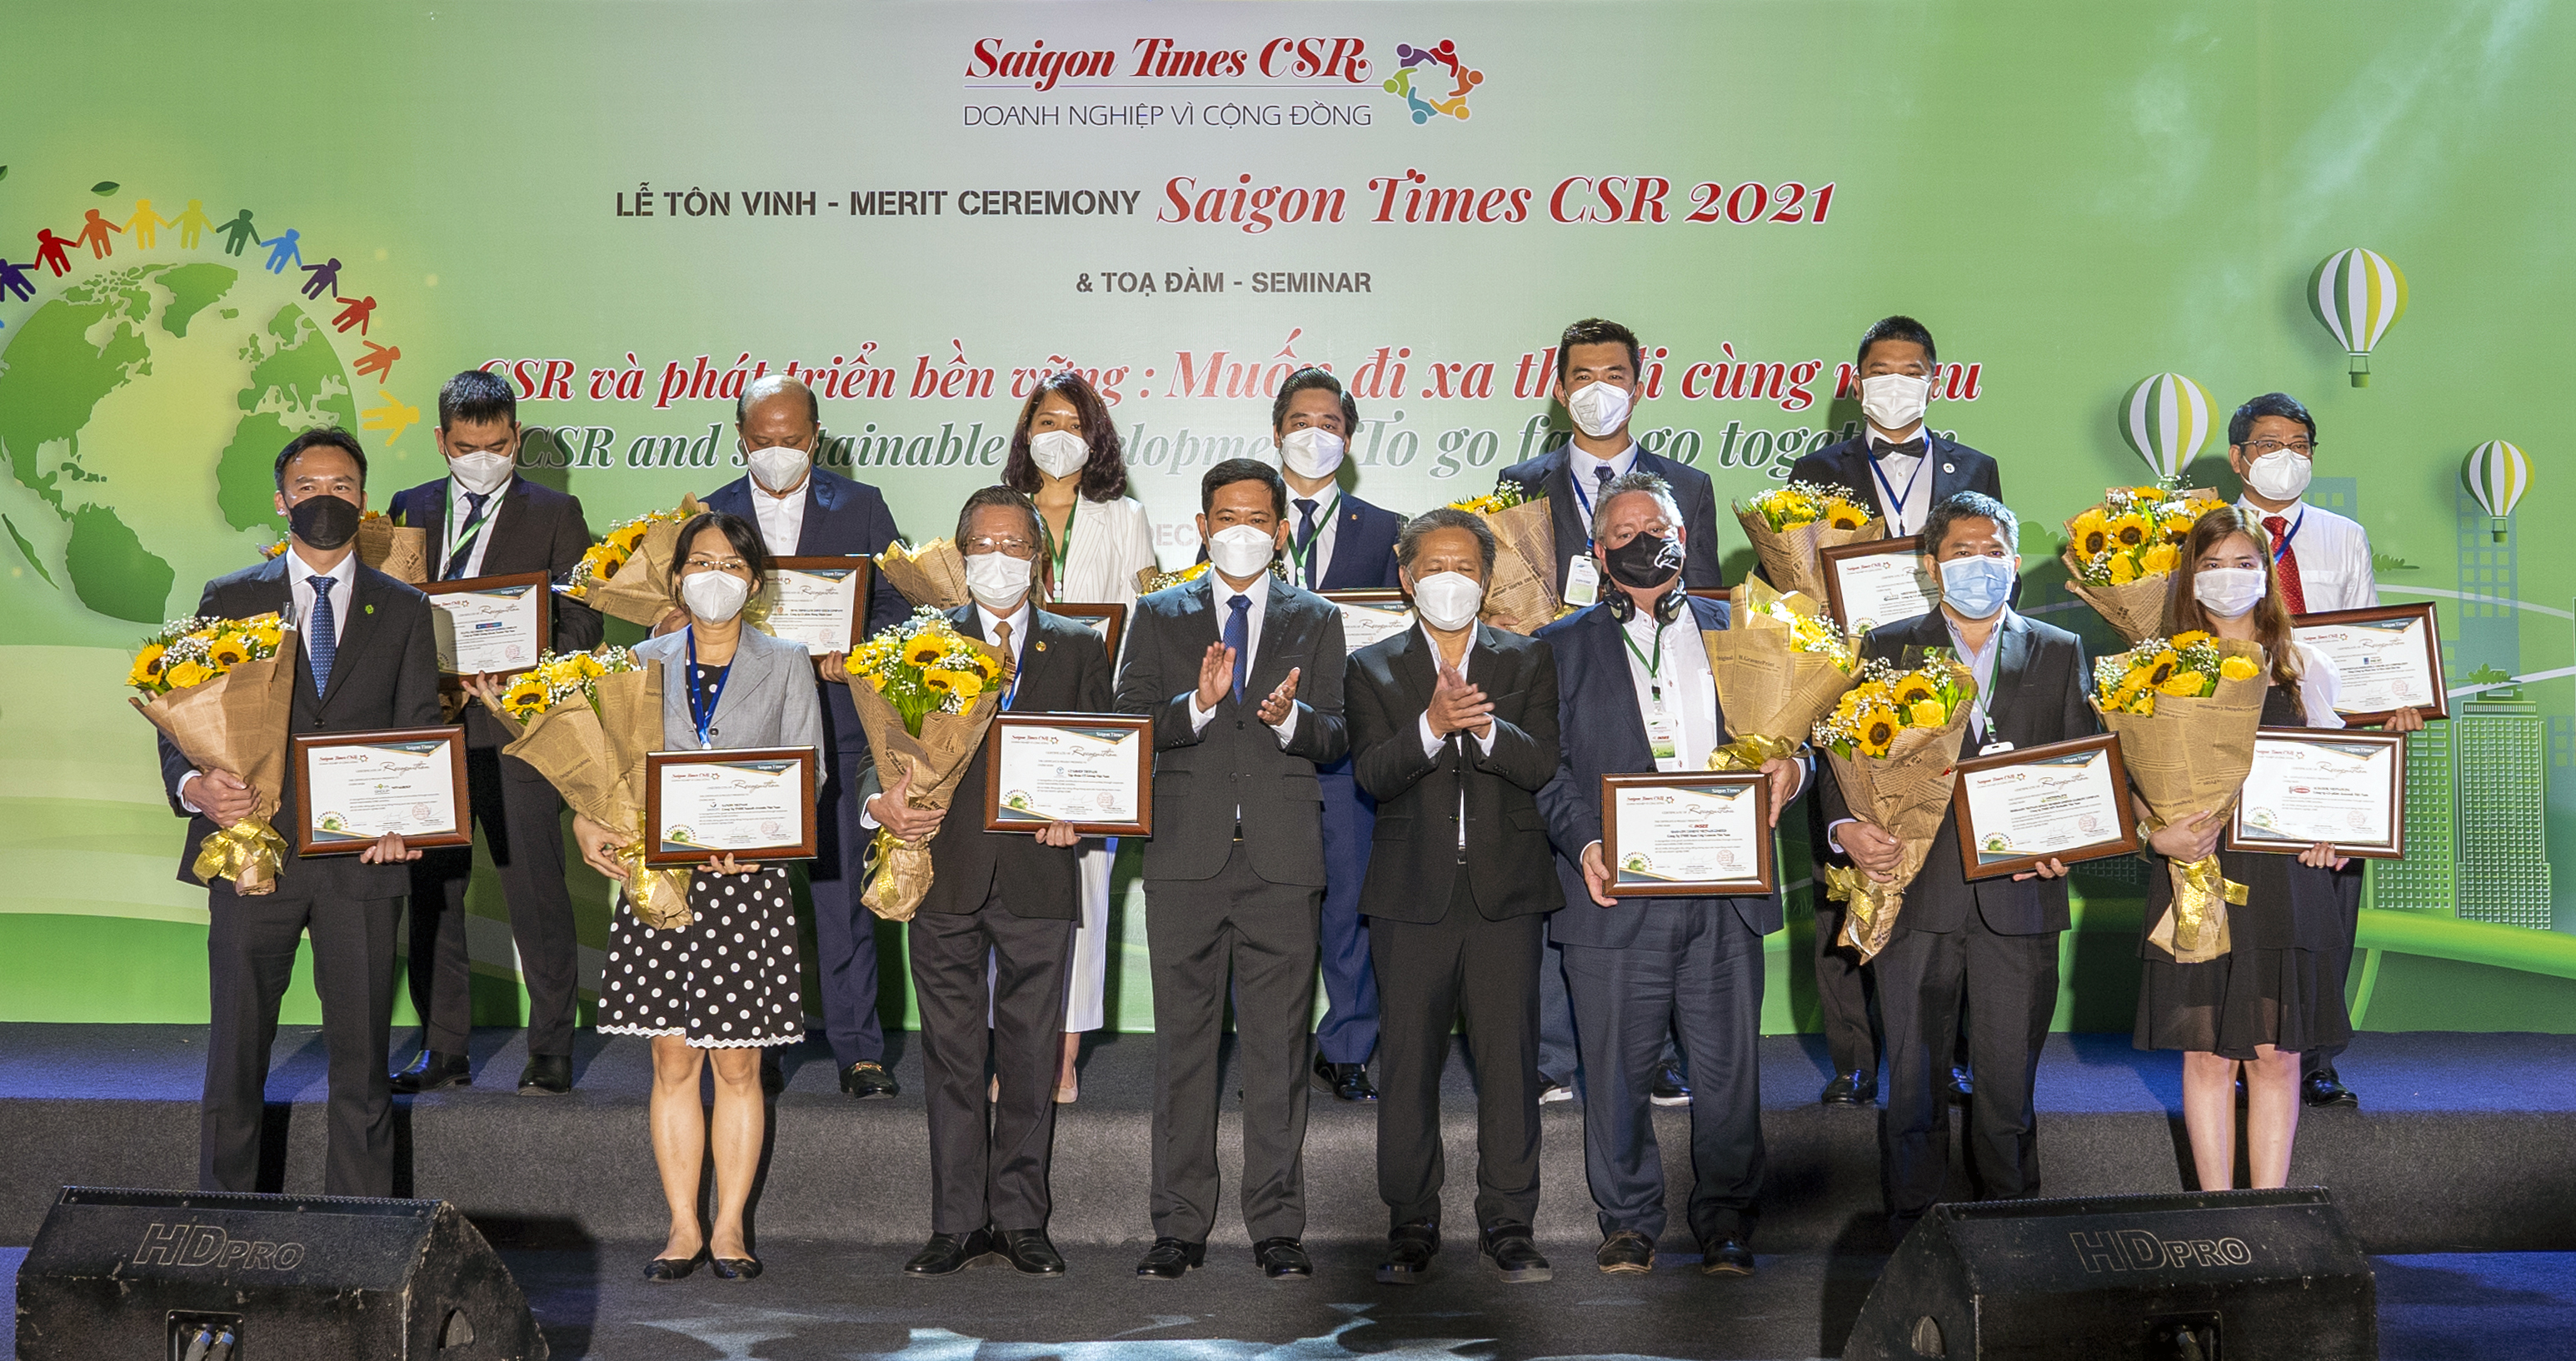 Các Doanh nghiệp được tôn vinh tại Saigon Times CSR 2021